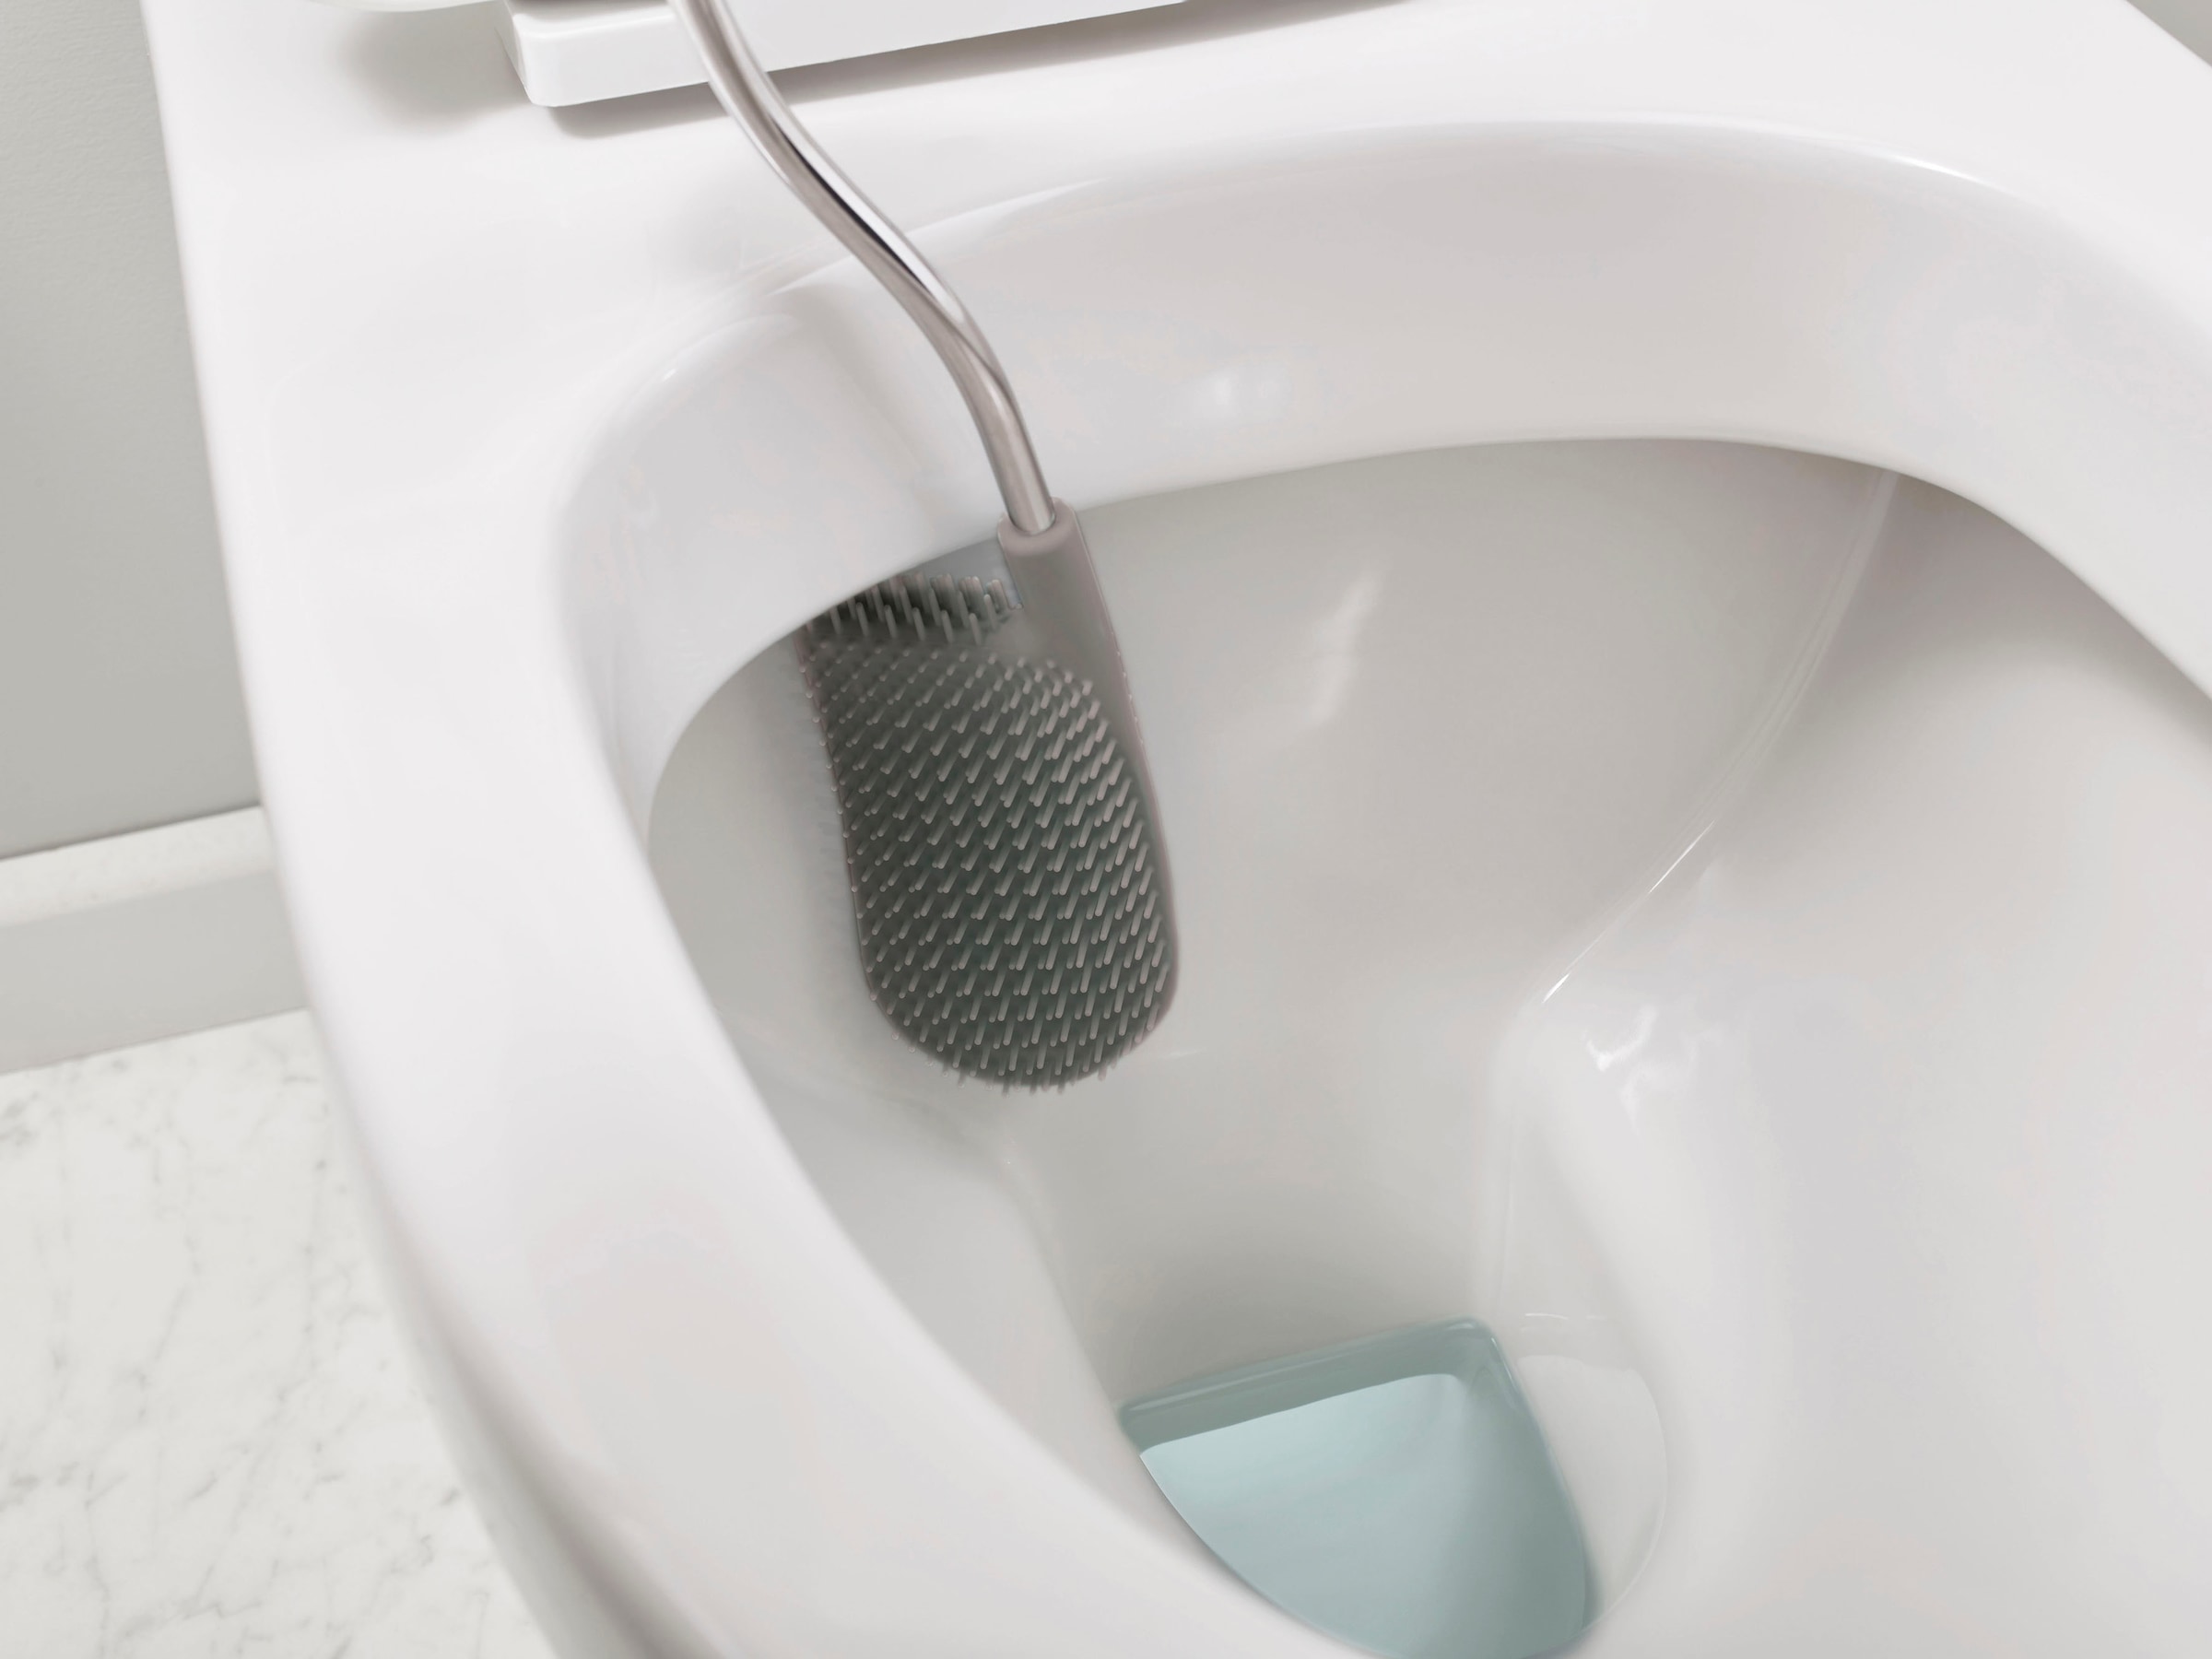 Joseph Joseph WC-Reinigungsbürste »Flex™ Plus«, Set, 2 St., aus Kunststoff-Edelstahl, mit Ständer, Tropfschutz & Antiverstopfungsdesign